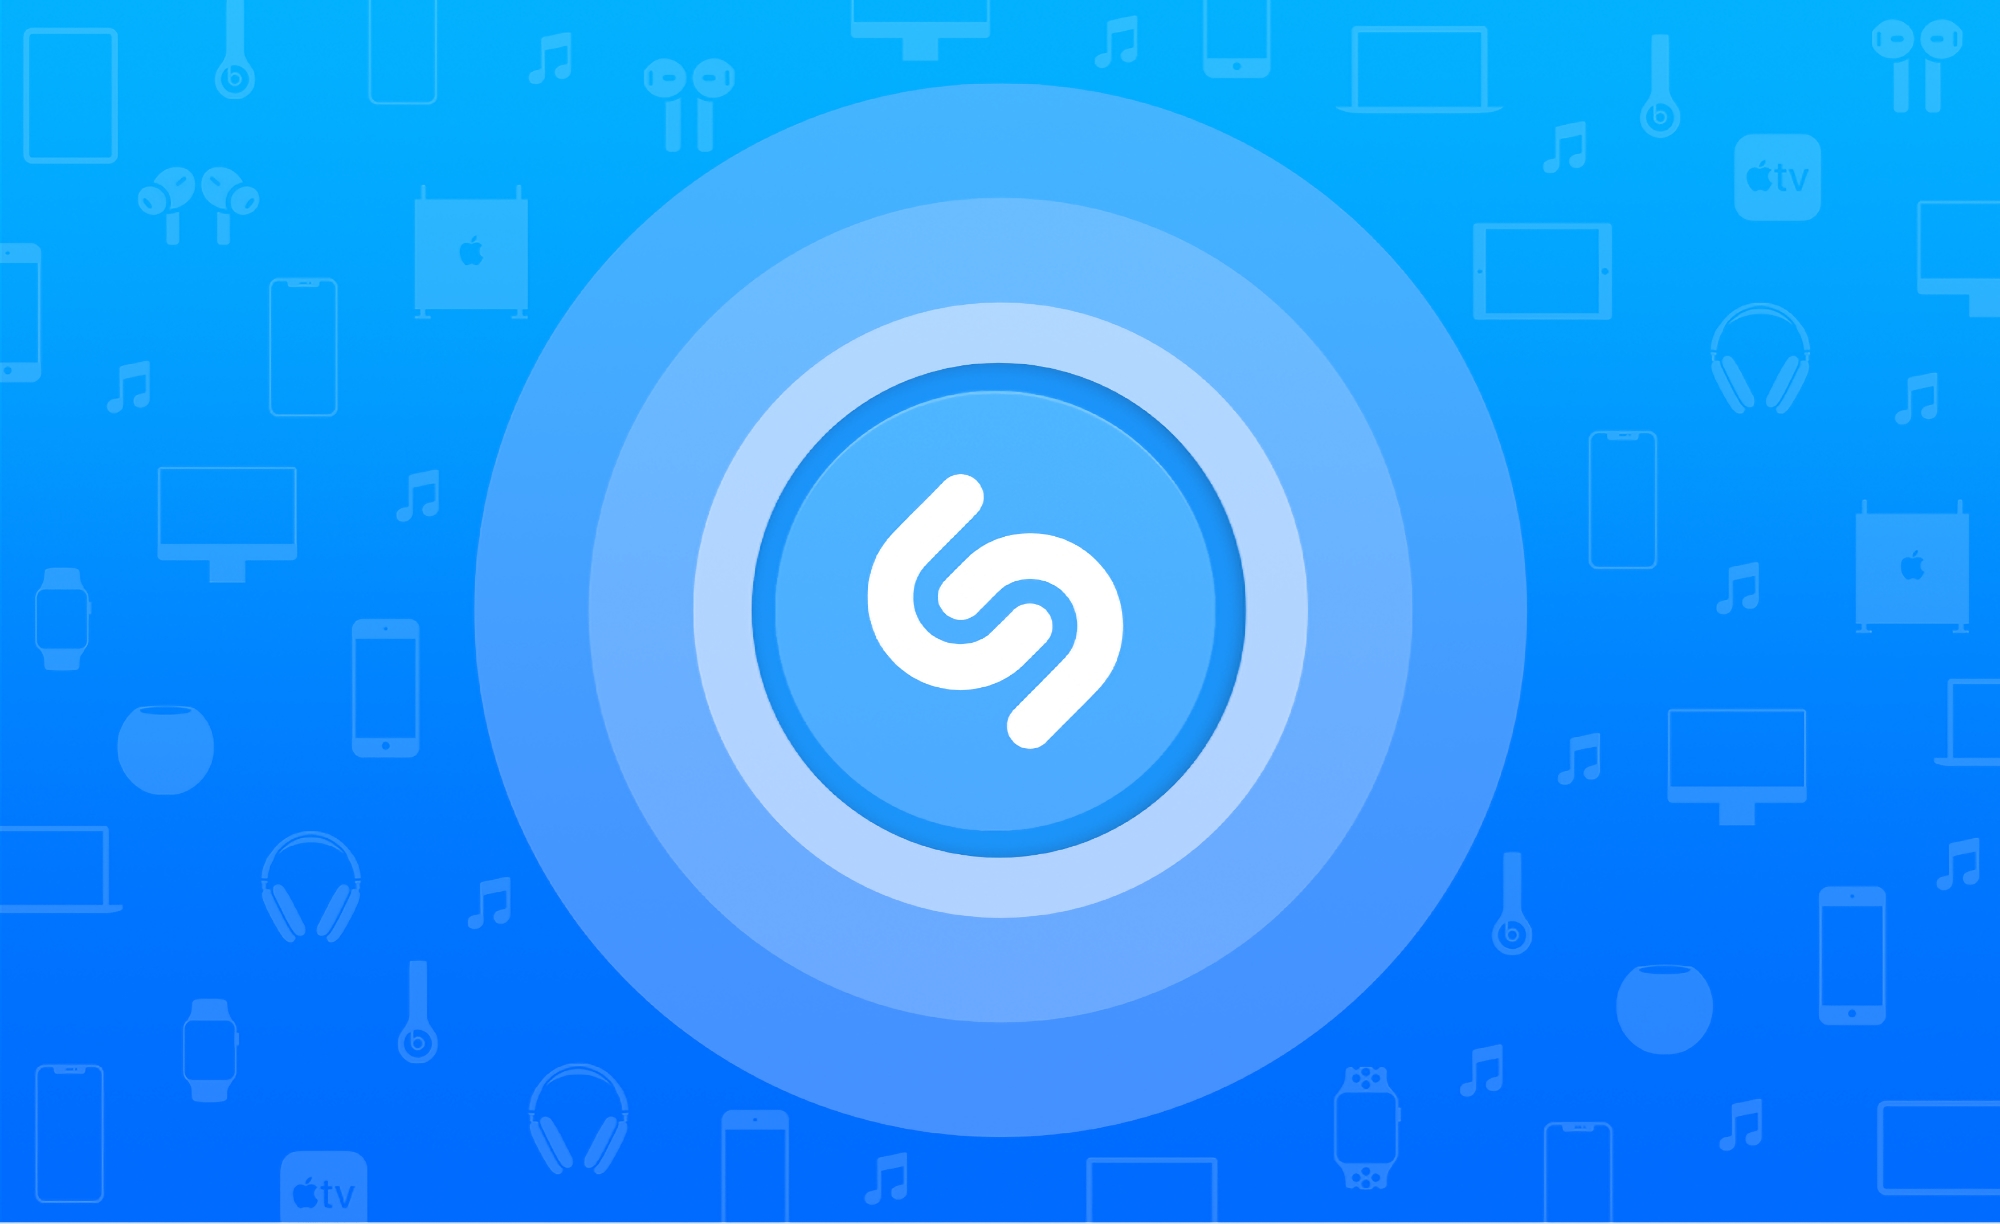 Użytkownicy iPhone'ów i iPadów mogą teraz używać Shazam do identyfikowania utworów w aplikacjach bez zdejmowania słuchawek.